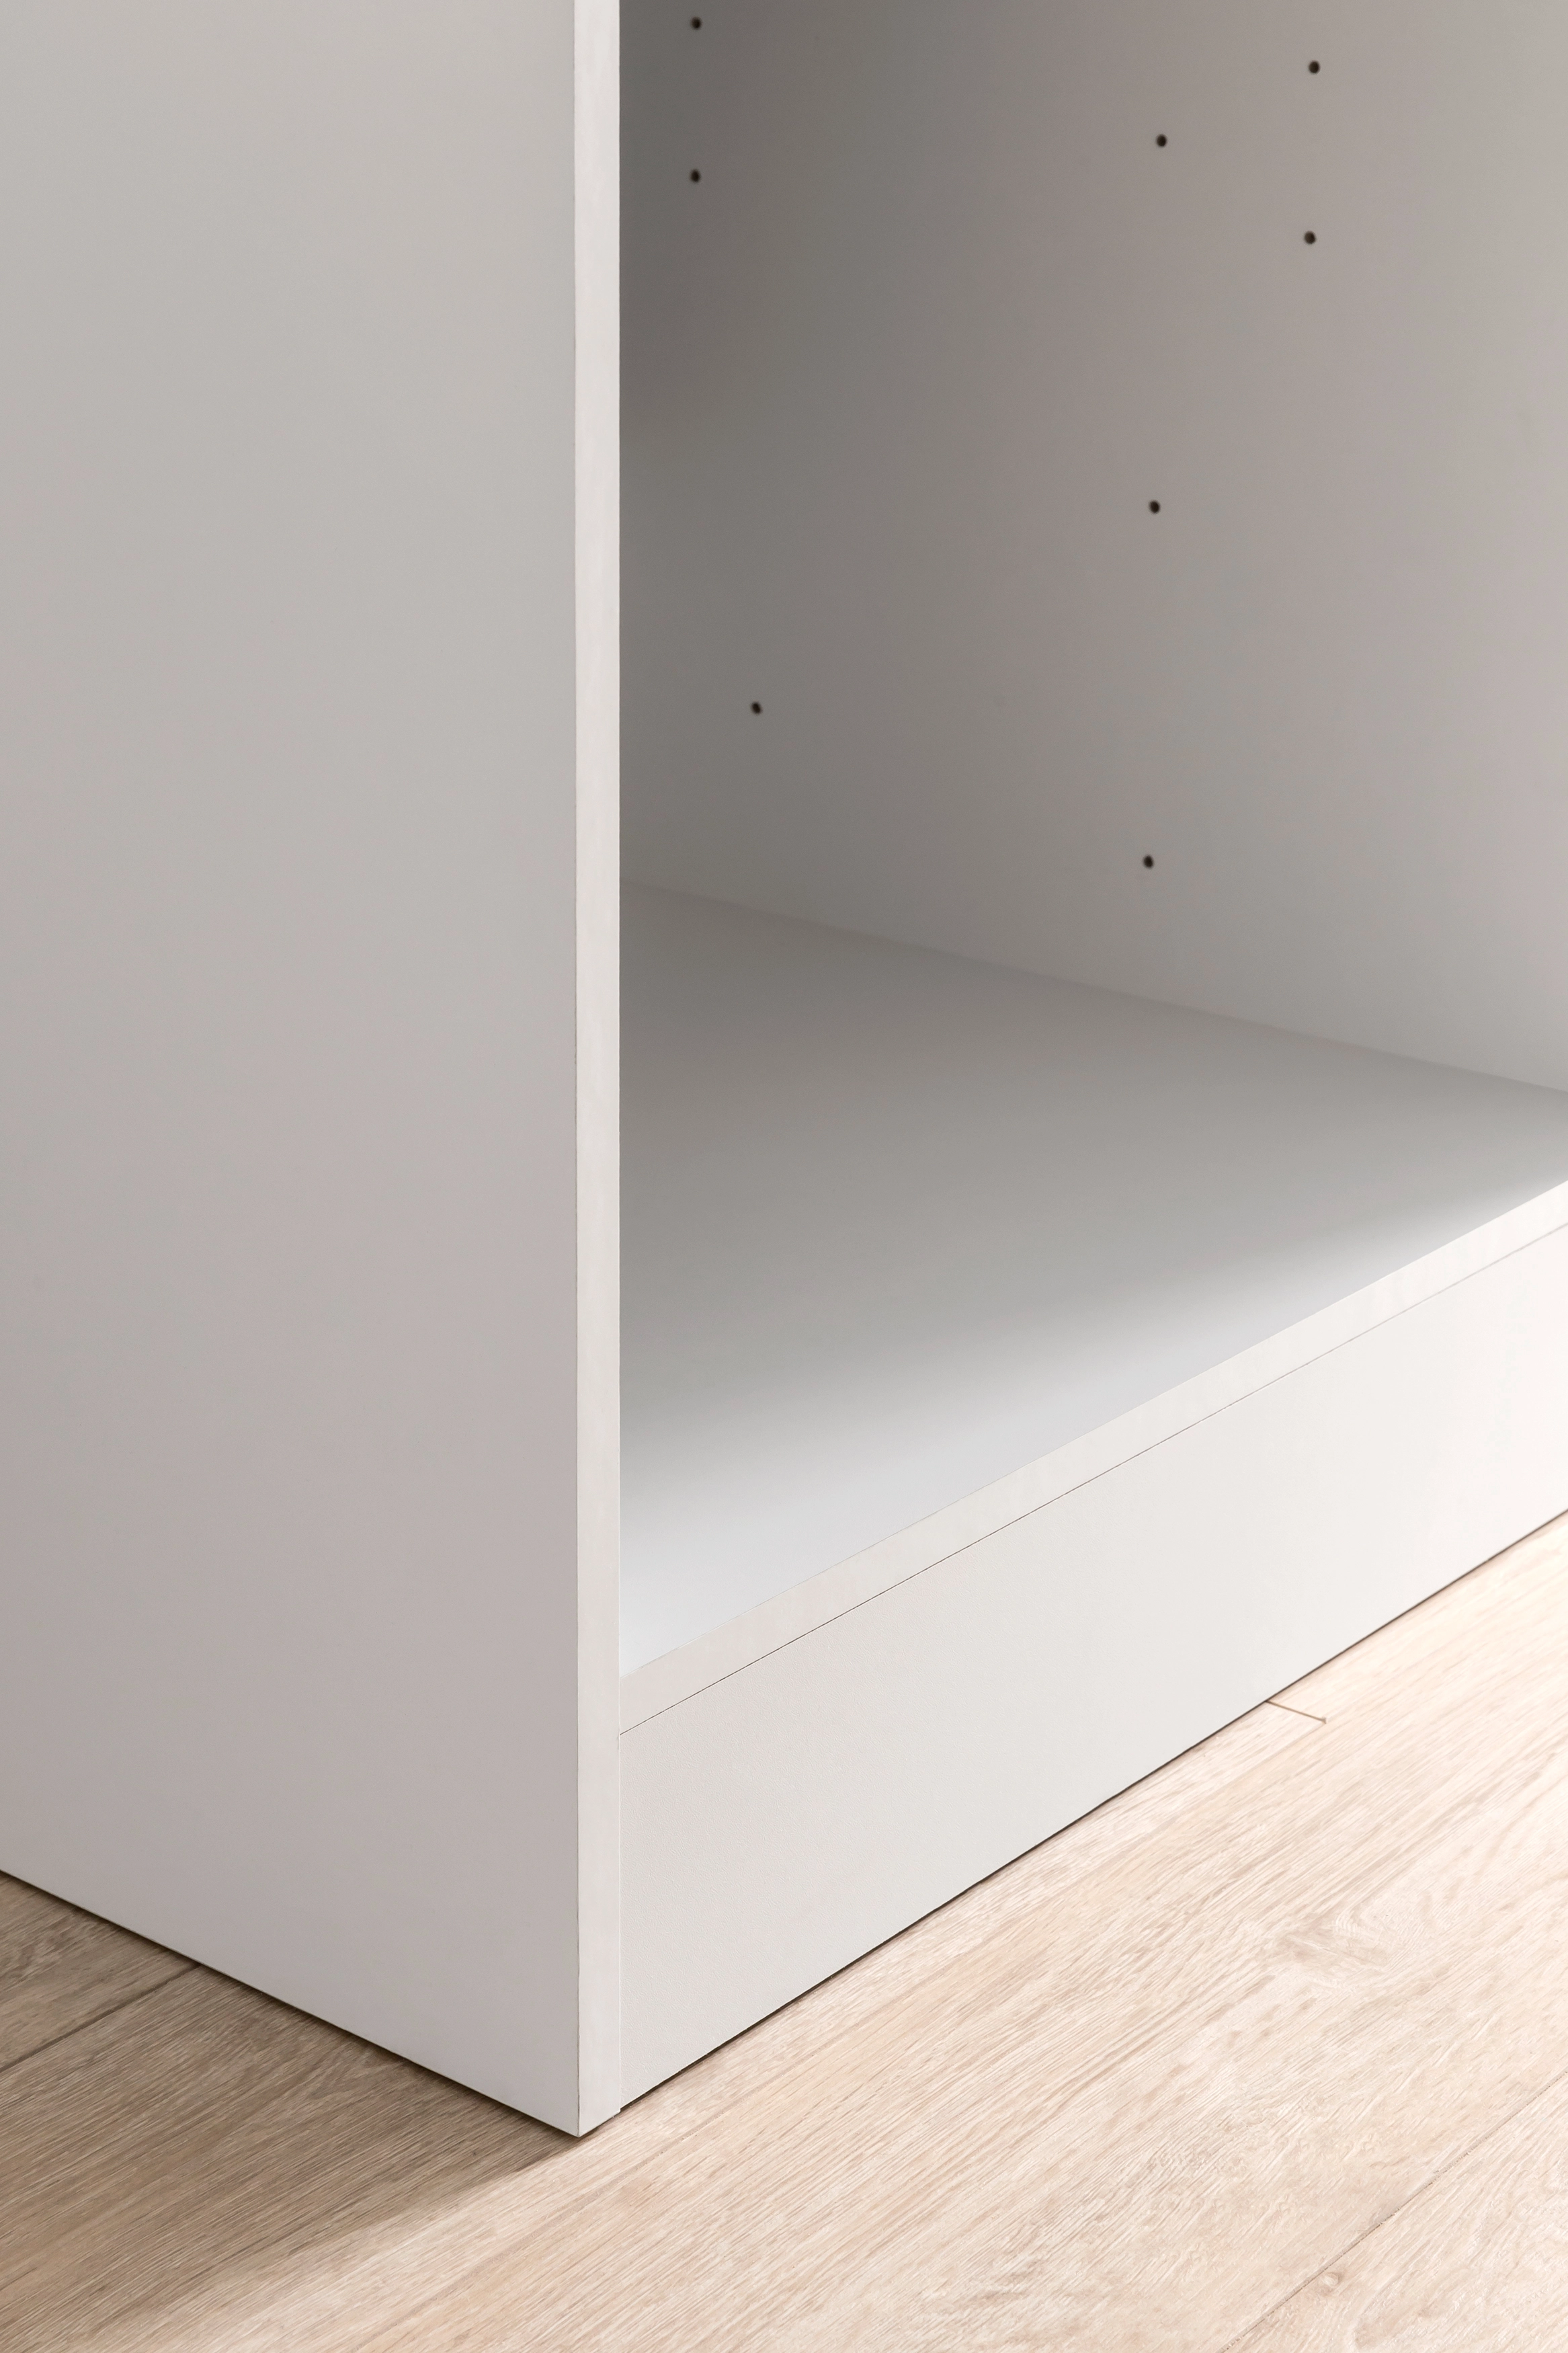 Held Möbel Herdumbauschrank Mailand 60 cm Hochglanz Weiß/Weiß kaufen bei OBI